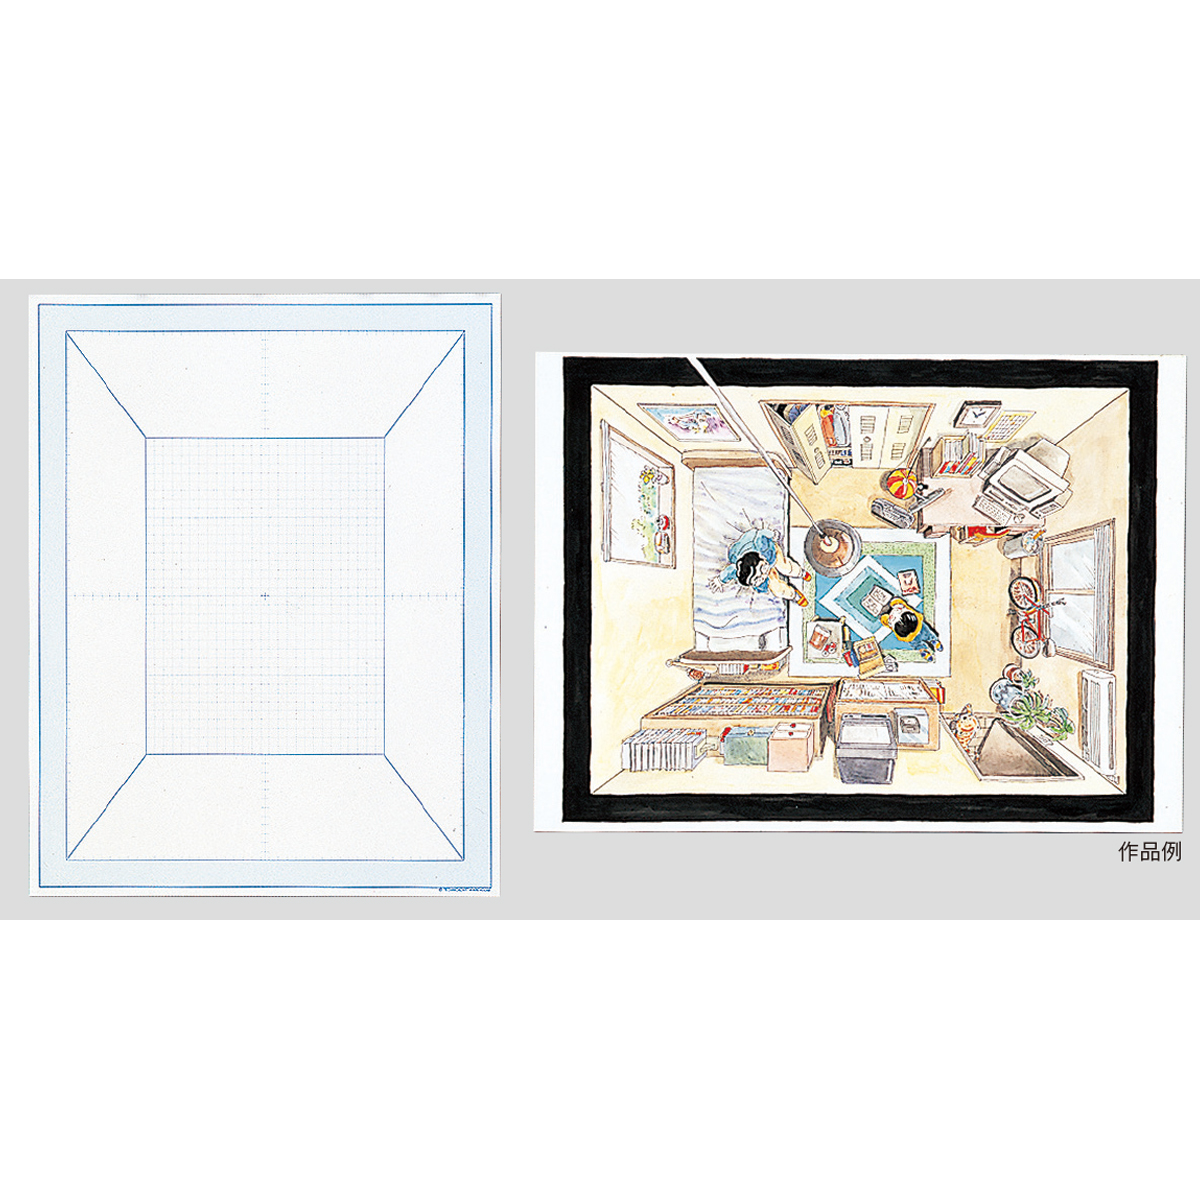 楽天市場 エンジェルビュー イラストボード 一点透視 平面構成 画材 ものづくりのアートロコ